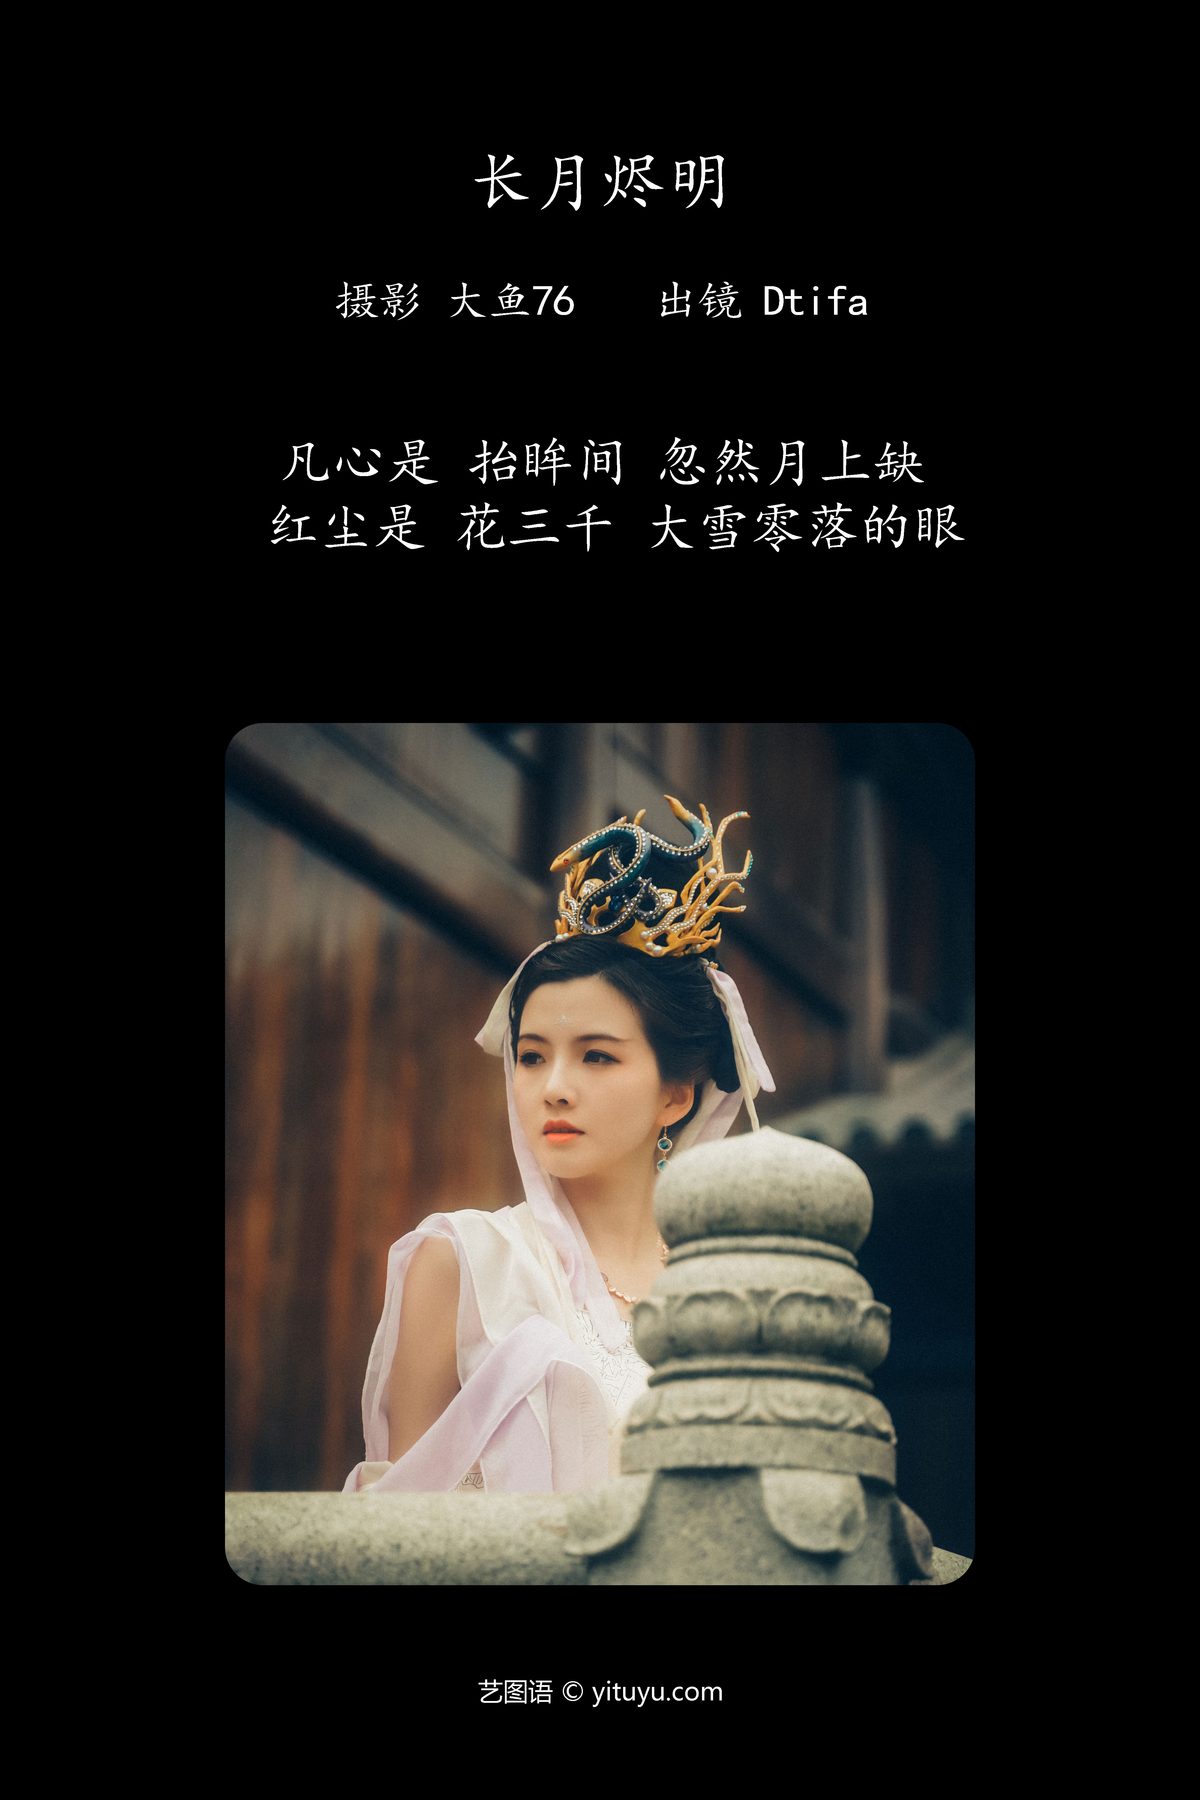 YiTuYu艺图语 Vol 4431 Tifa Ding Xiao Ni 0002 1996563639.jpg